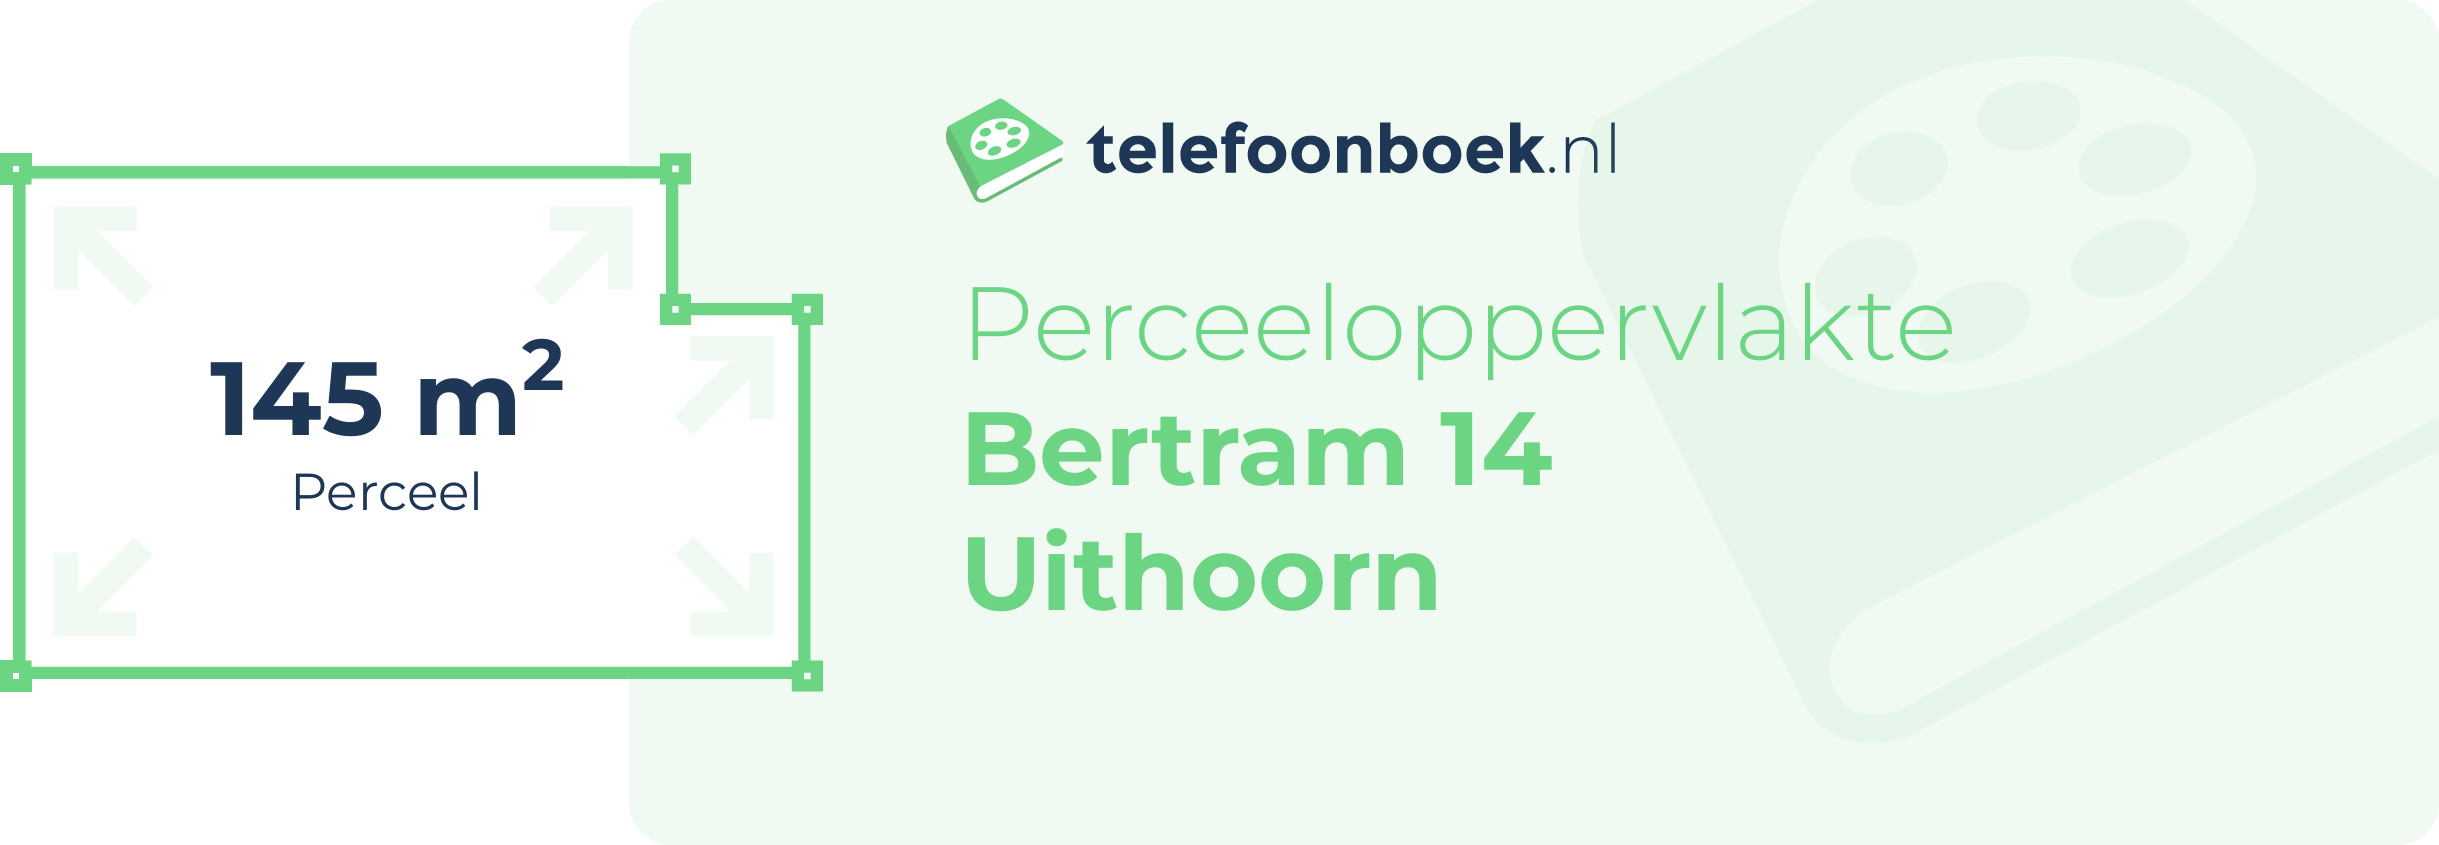 Perceeloppervlakte Bertram 14 Uithoorn